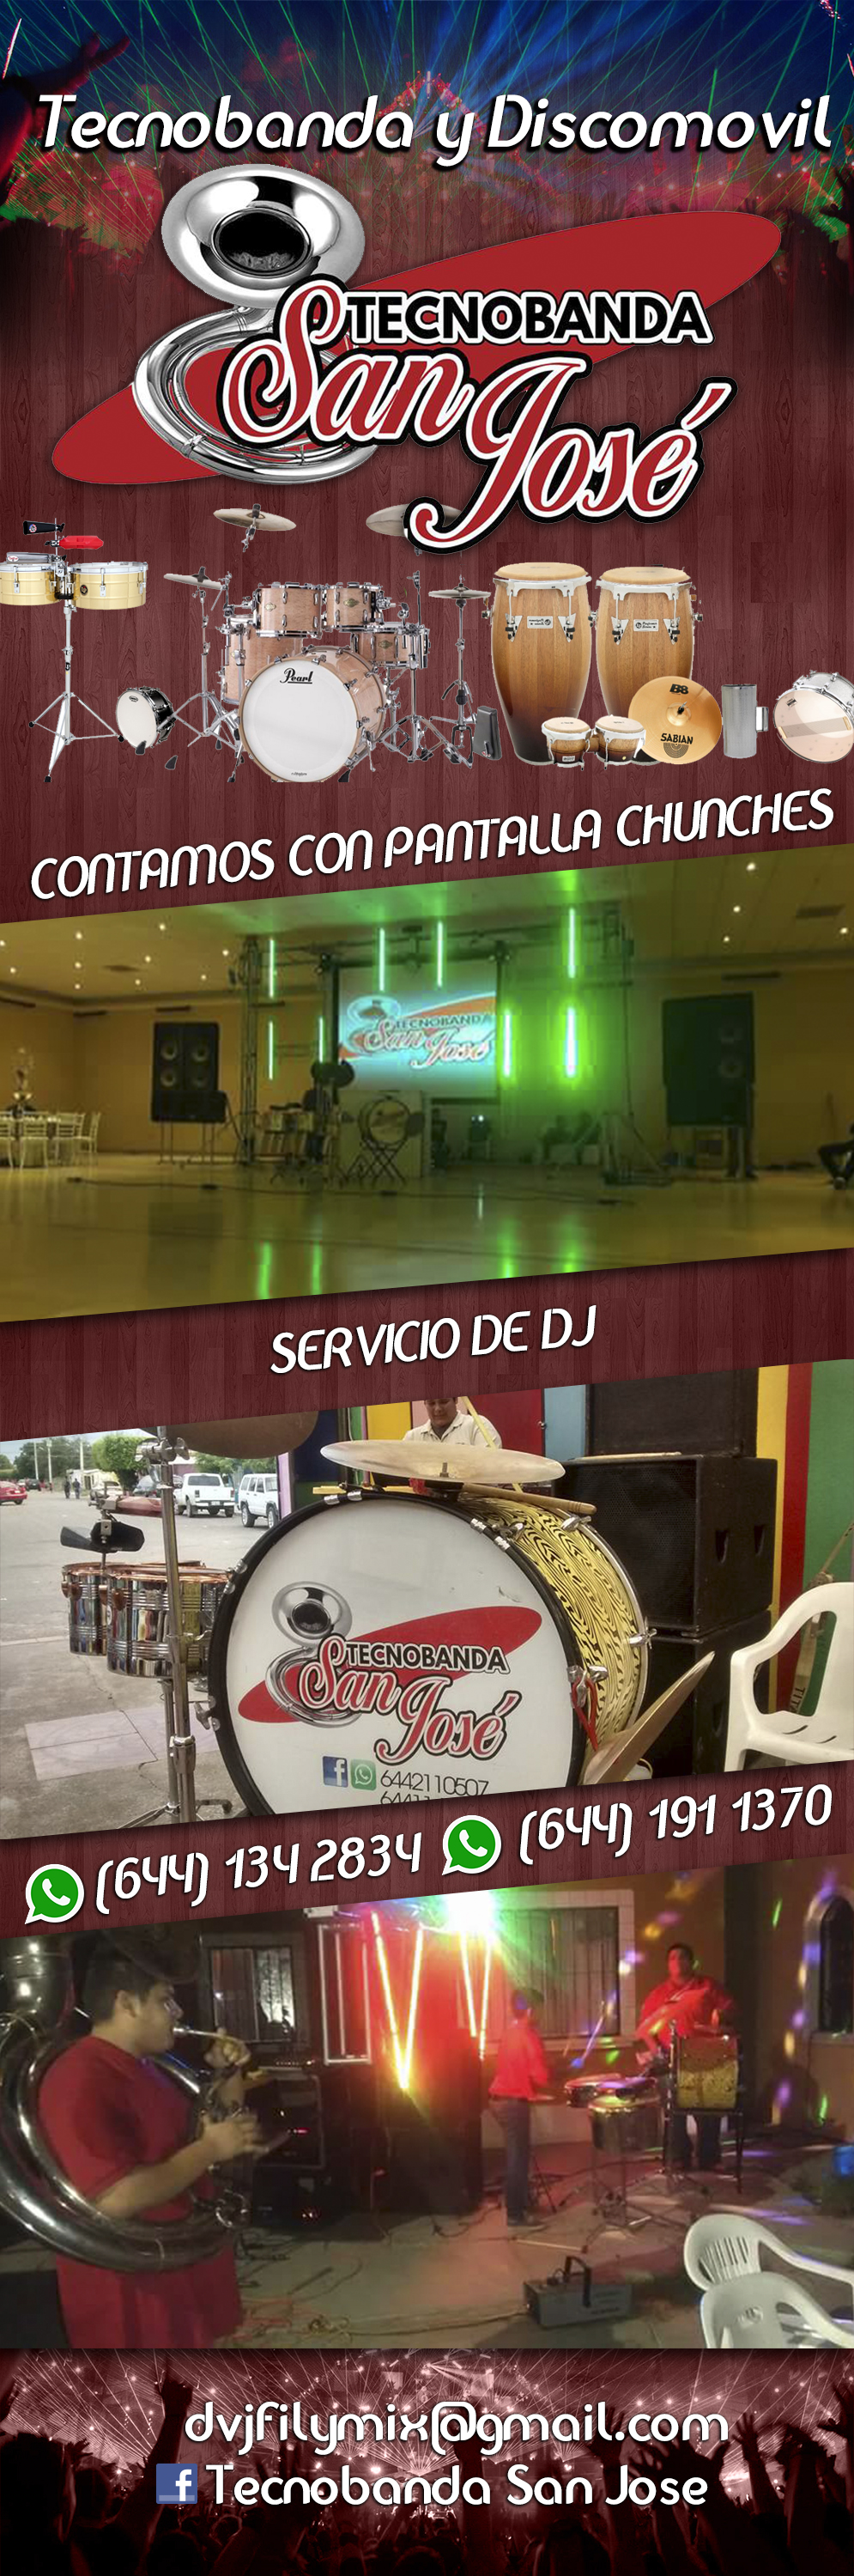 Tecnobanda San José-Servicio de TecnoBanda, Discomovil y DJ. Contamos con Pantallas, Chunches para tu evento. 